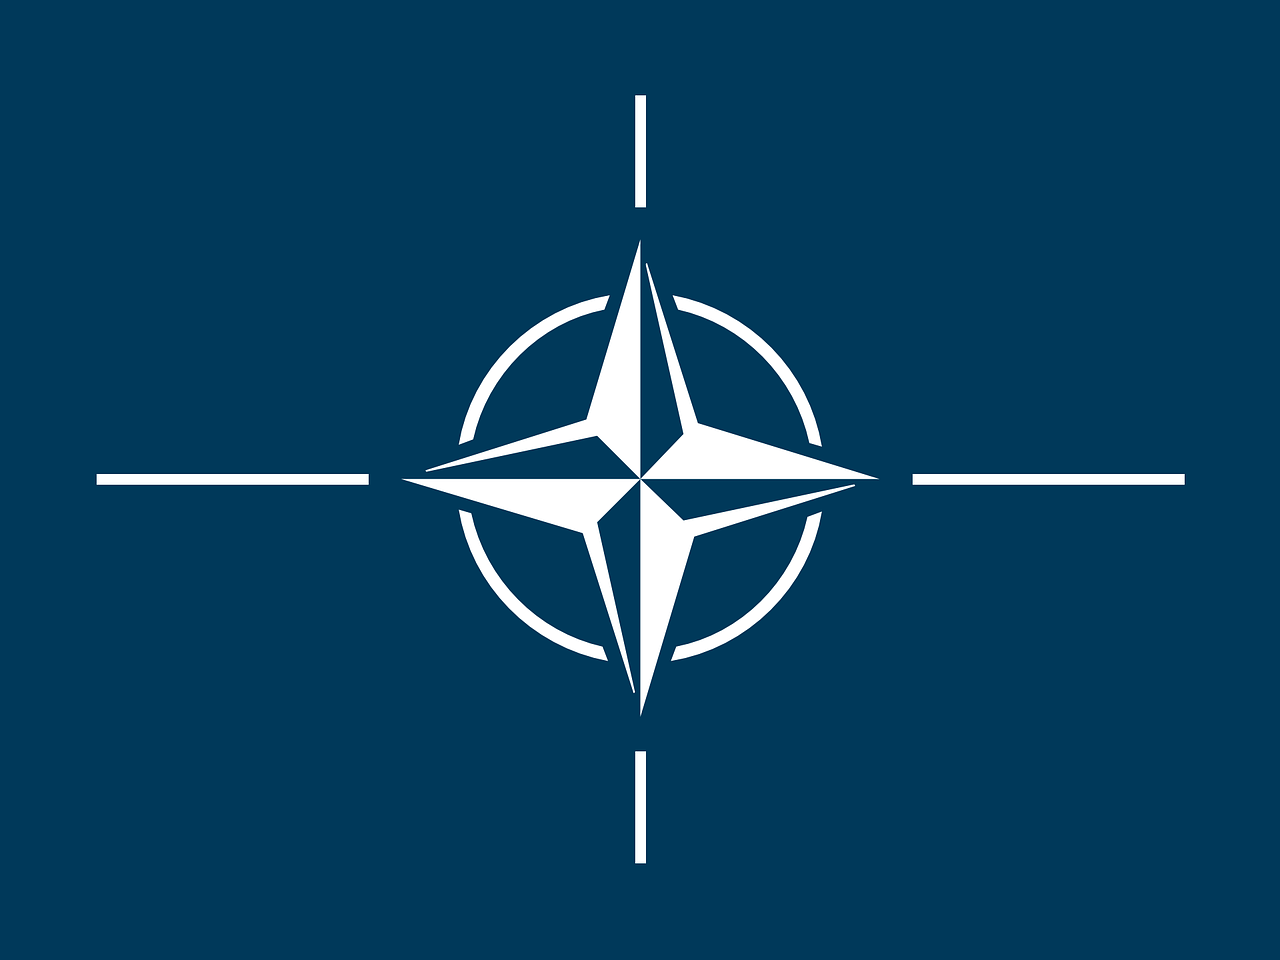 NATO demands closing border with Russia 